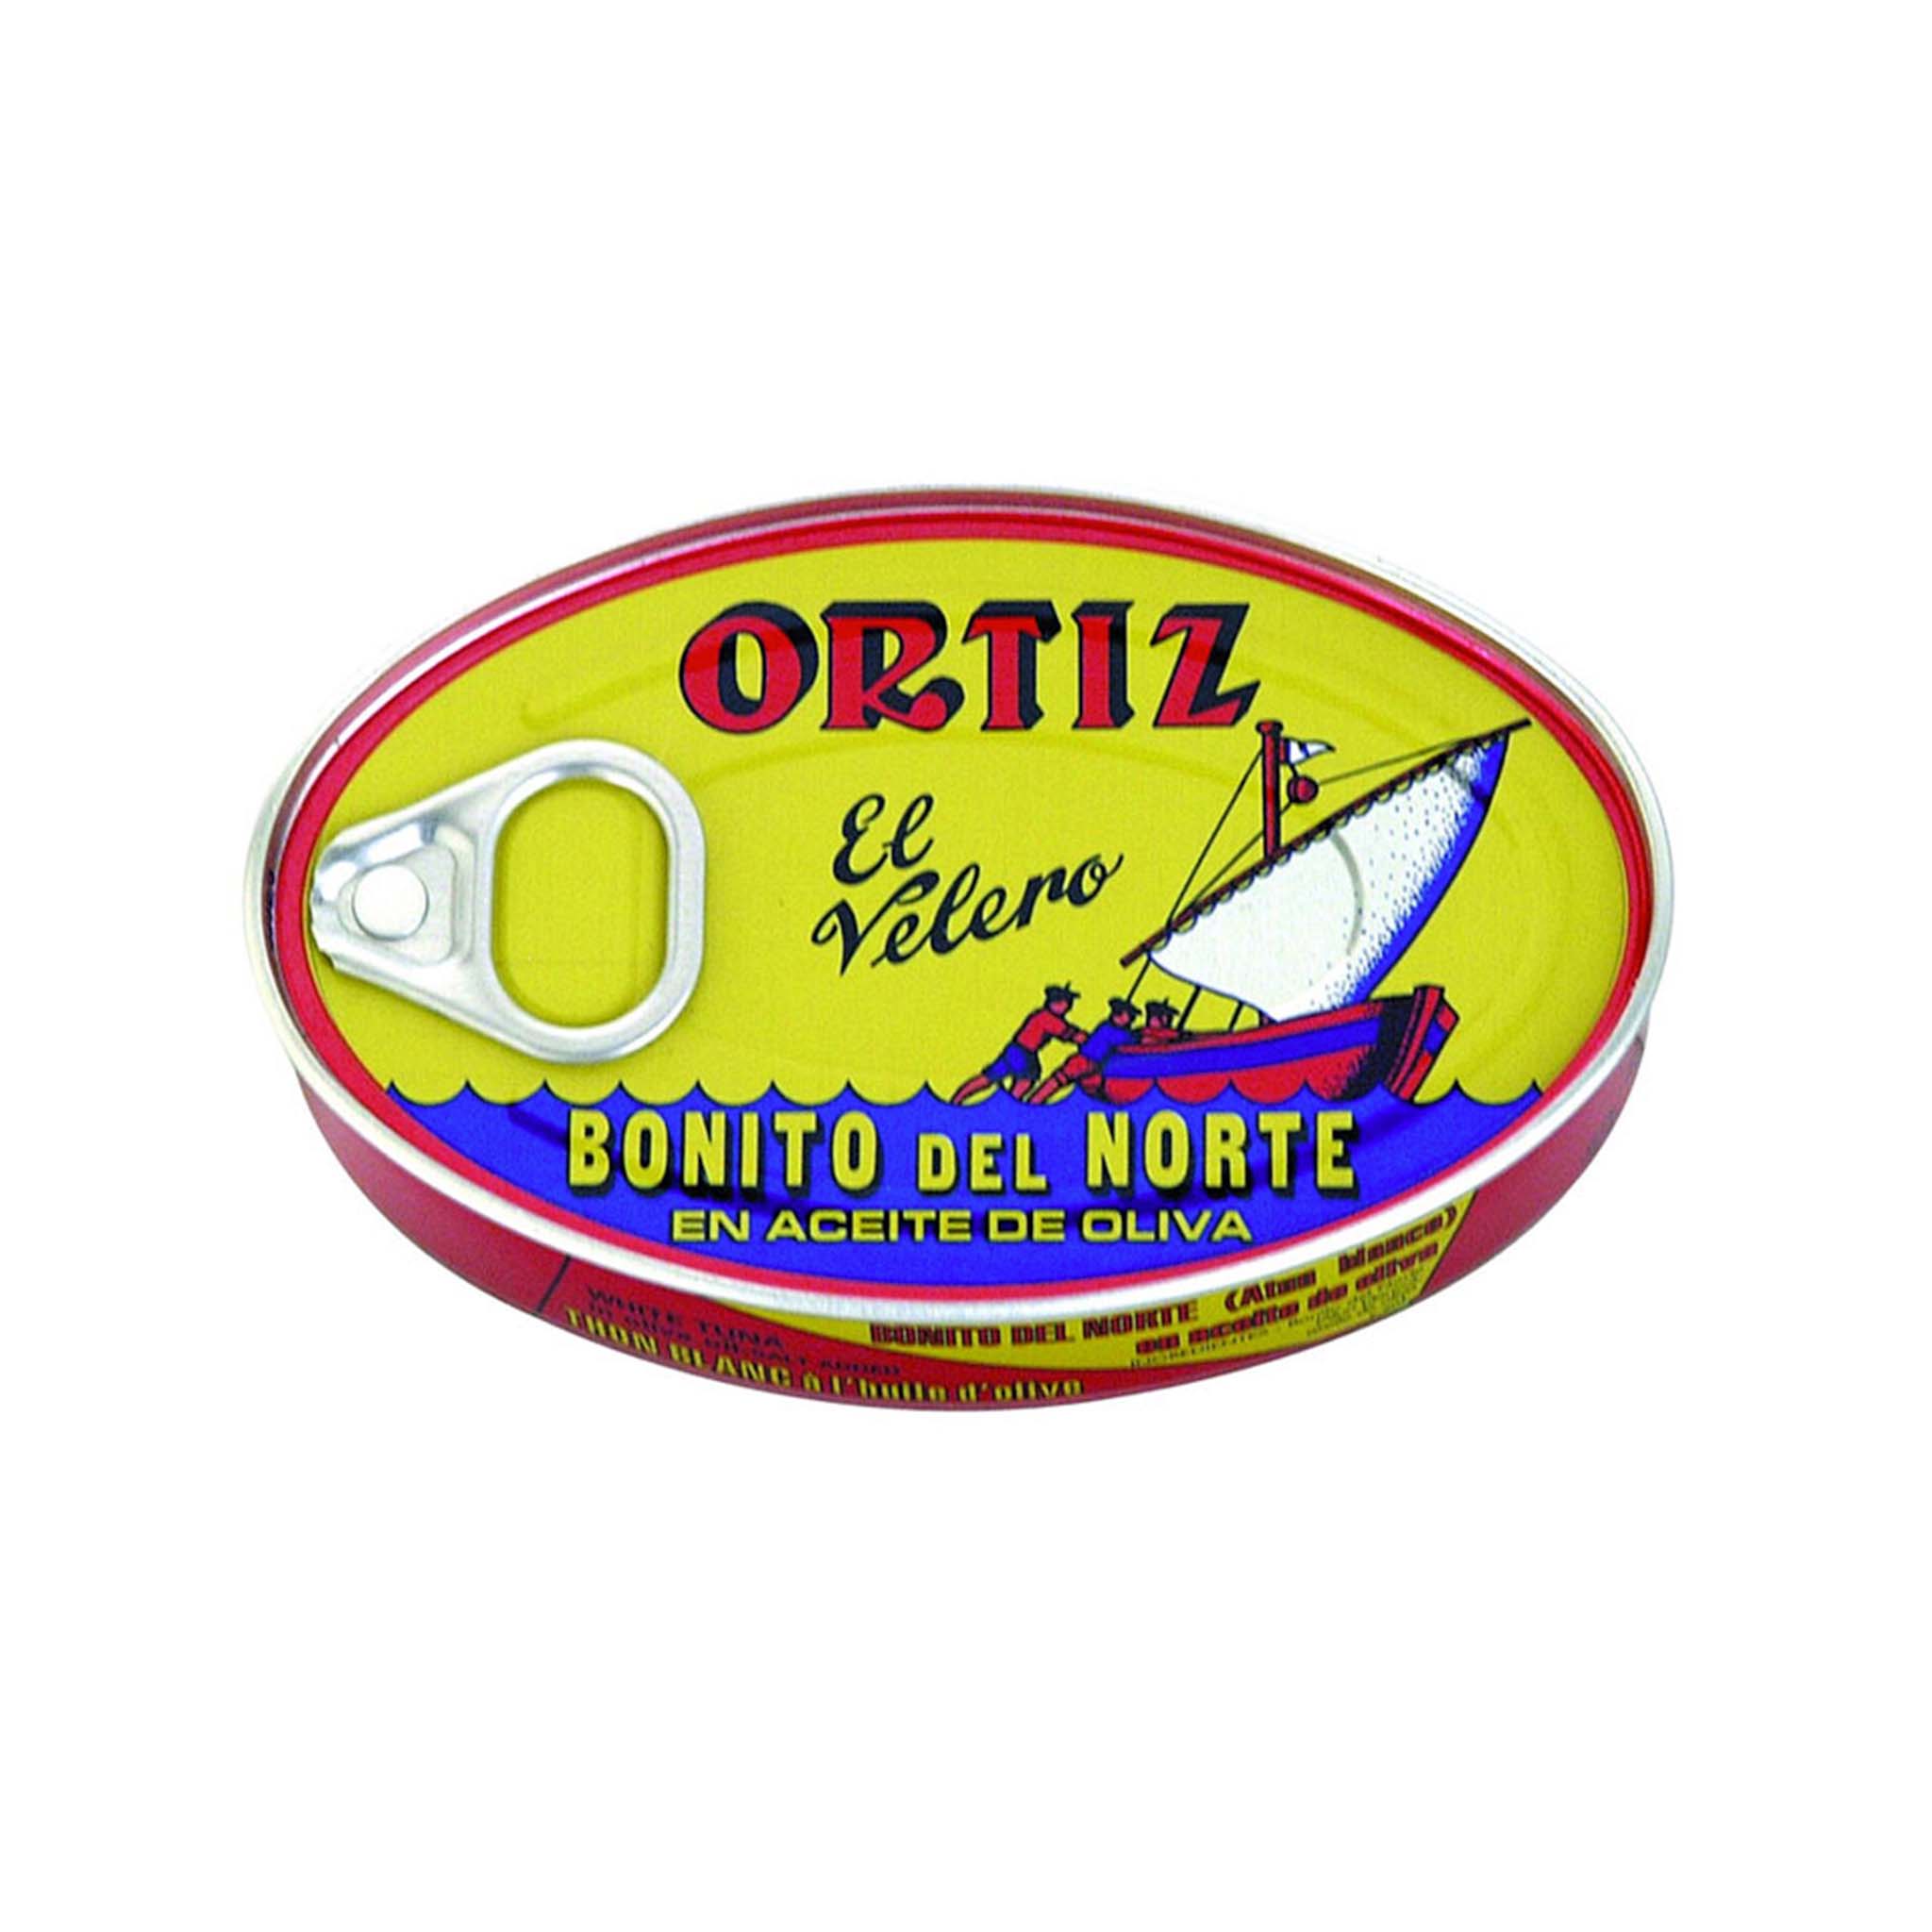 Ortiz White Tuna in Oval Tin